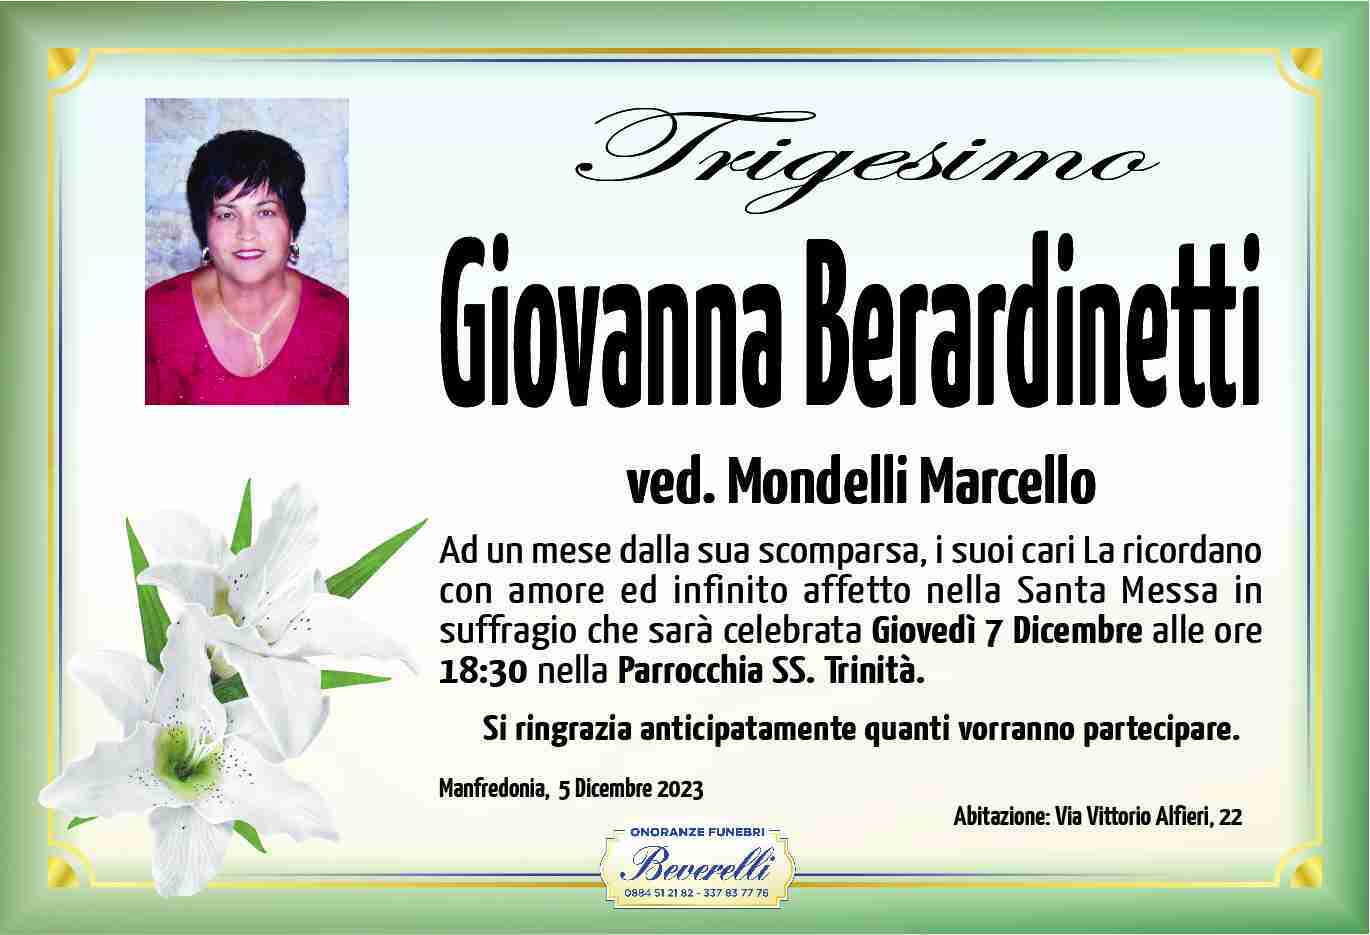 Giovanna Berardinetti